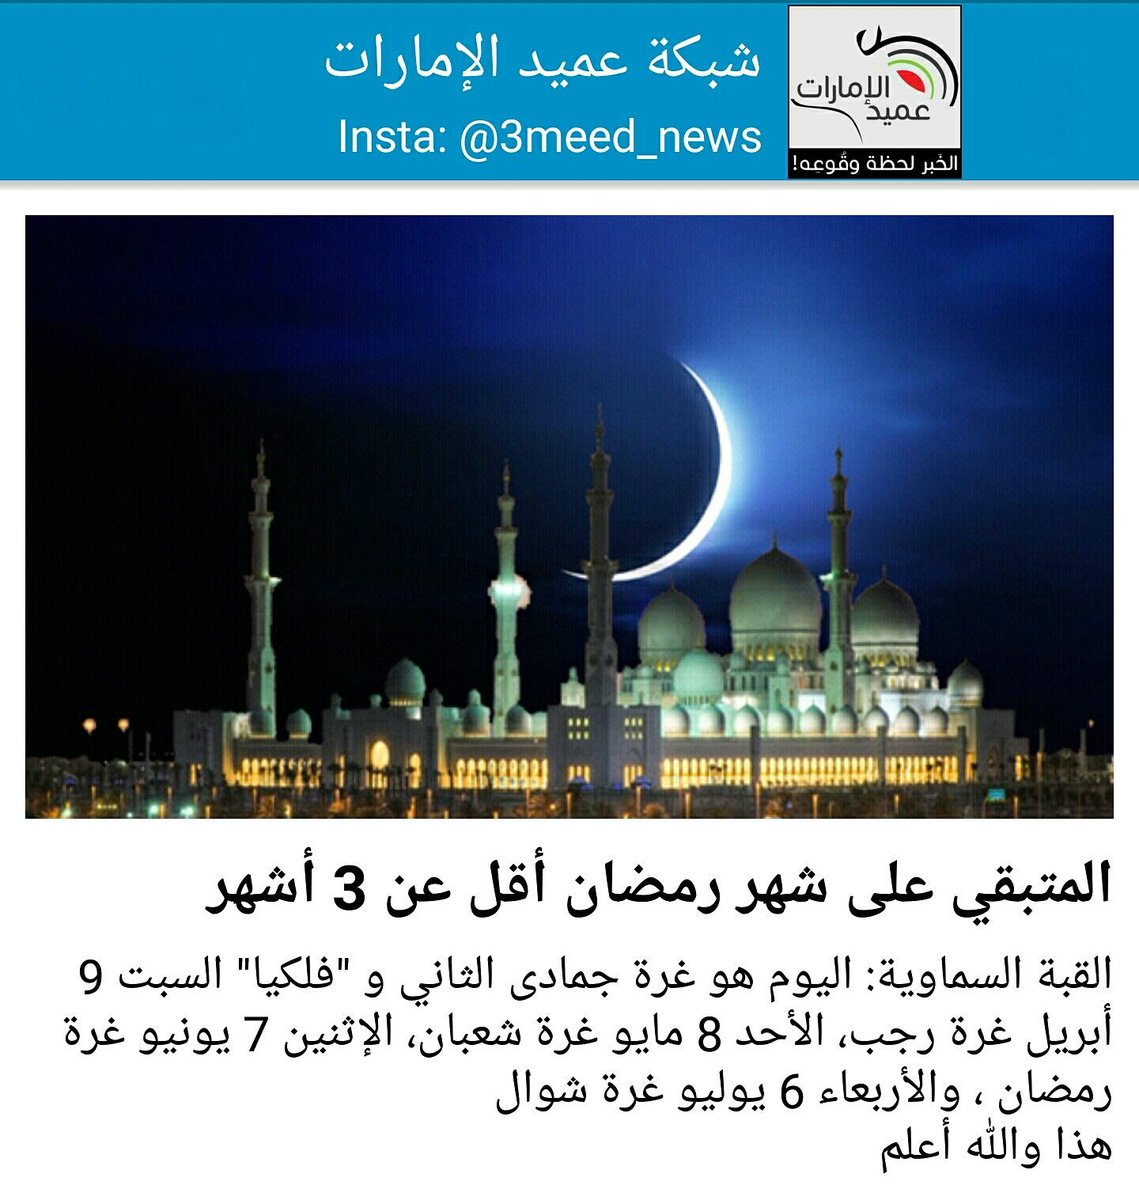 شبكة عميد الإمارات Twitterren المتبقي على شهر رمضان أقل عن 3 أشهر Https T Co Qyctaxpfxc